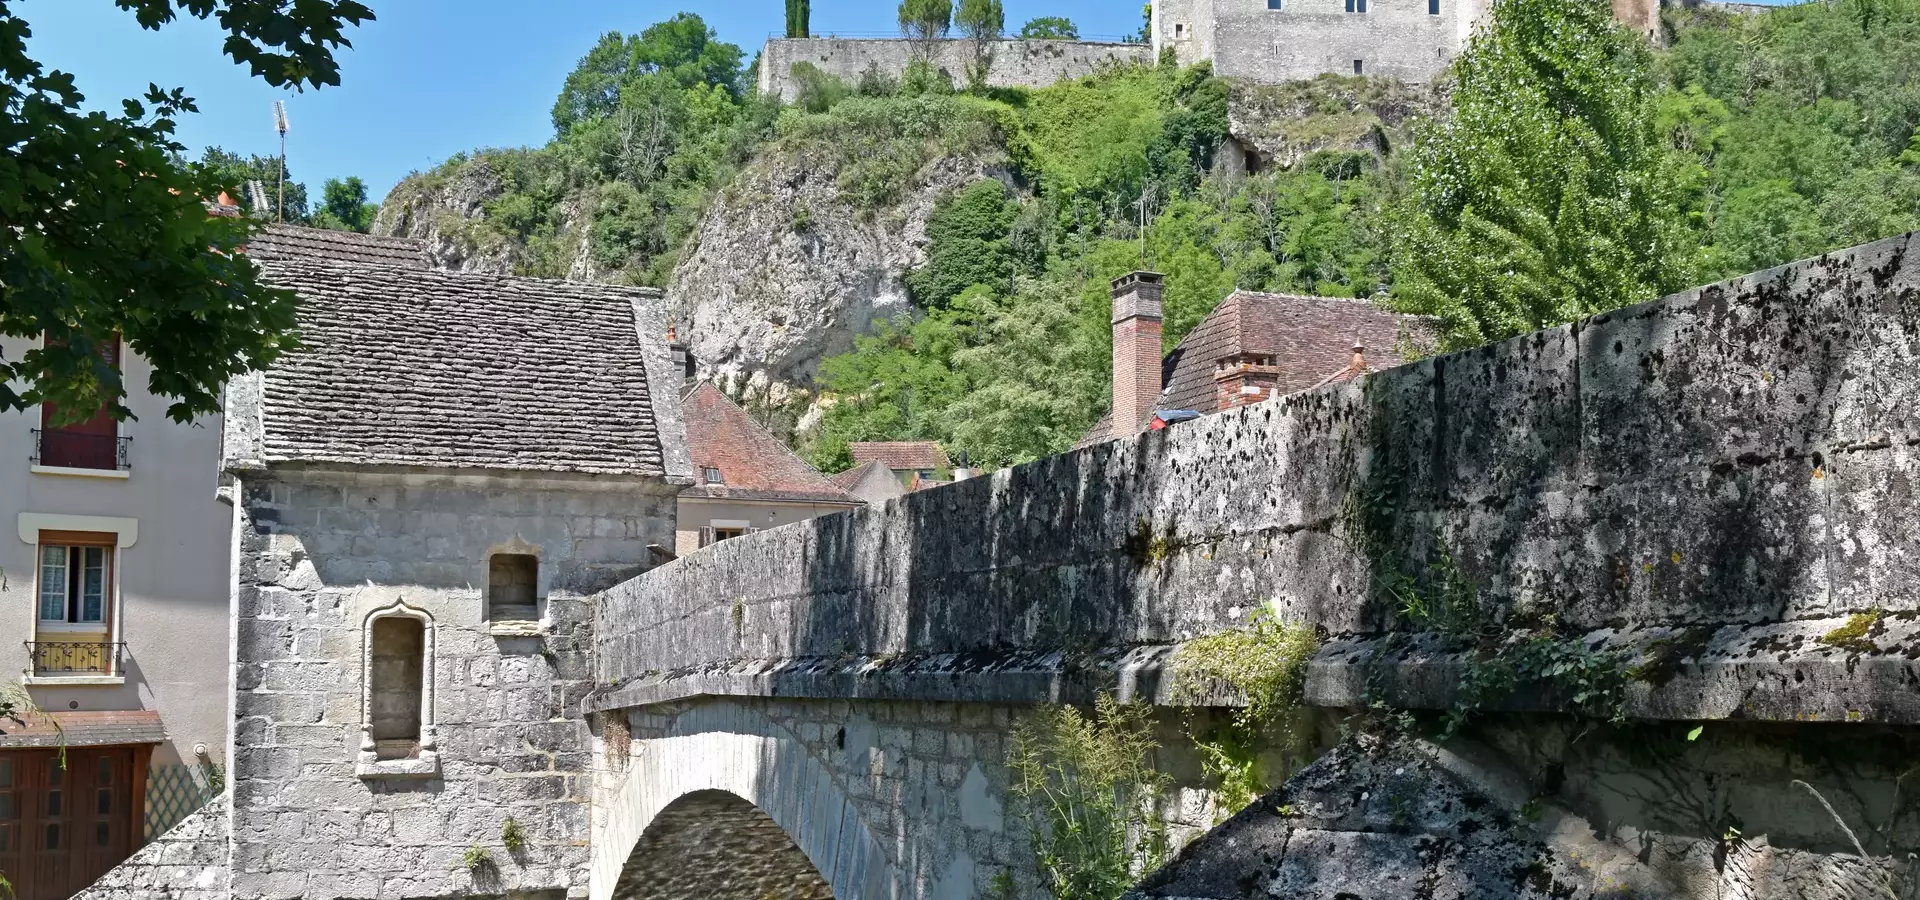 Bienvenue à Mailly le Château, au cœur de la Bourgogne dans l'Yonne 89